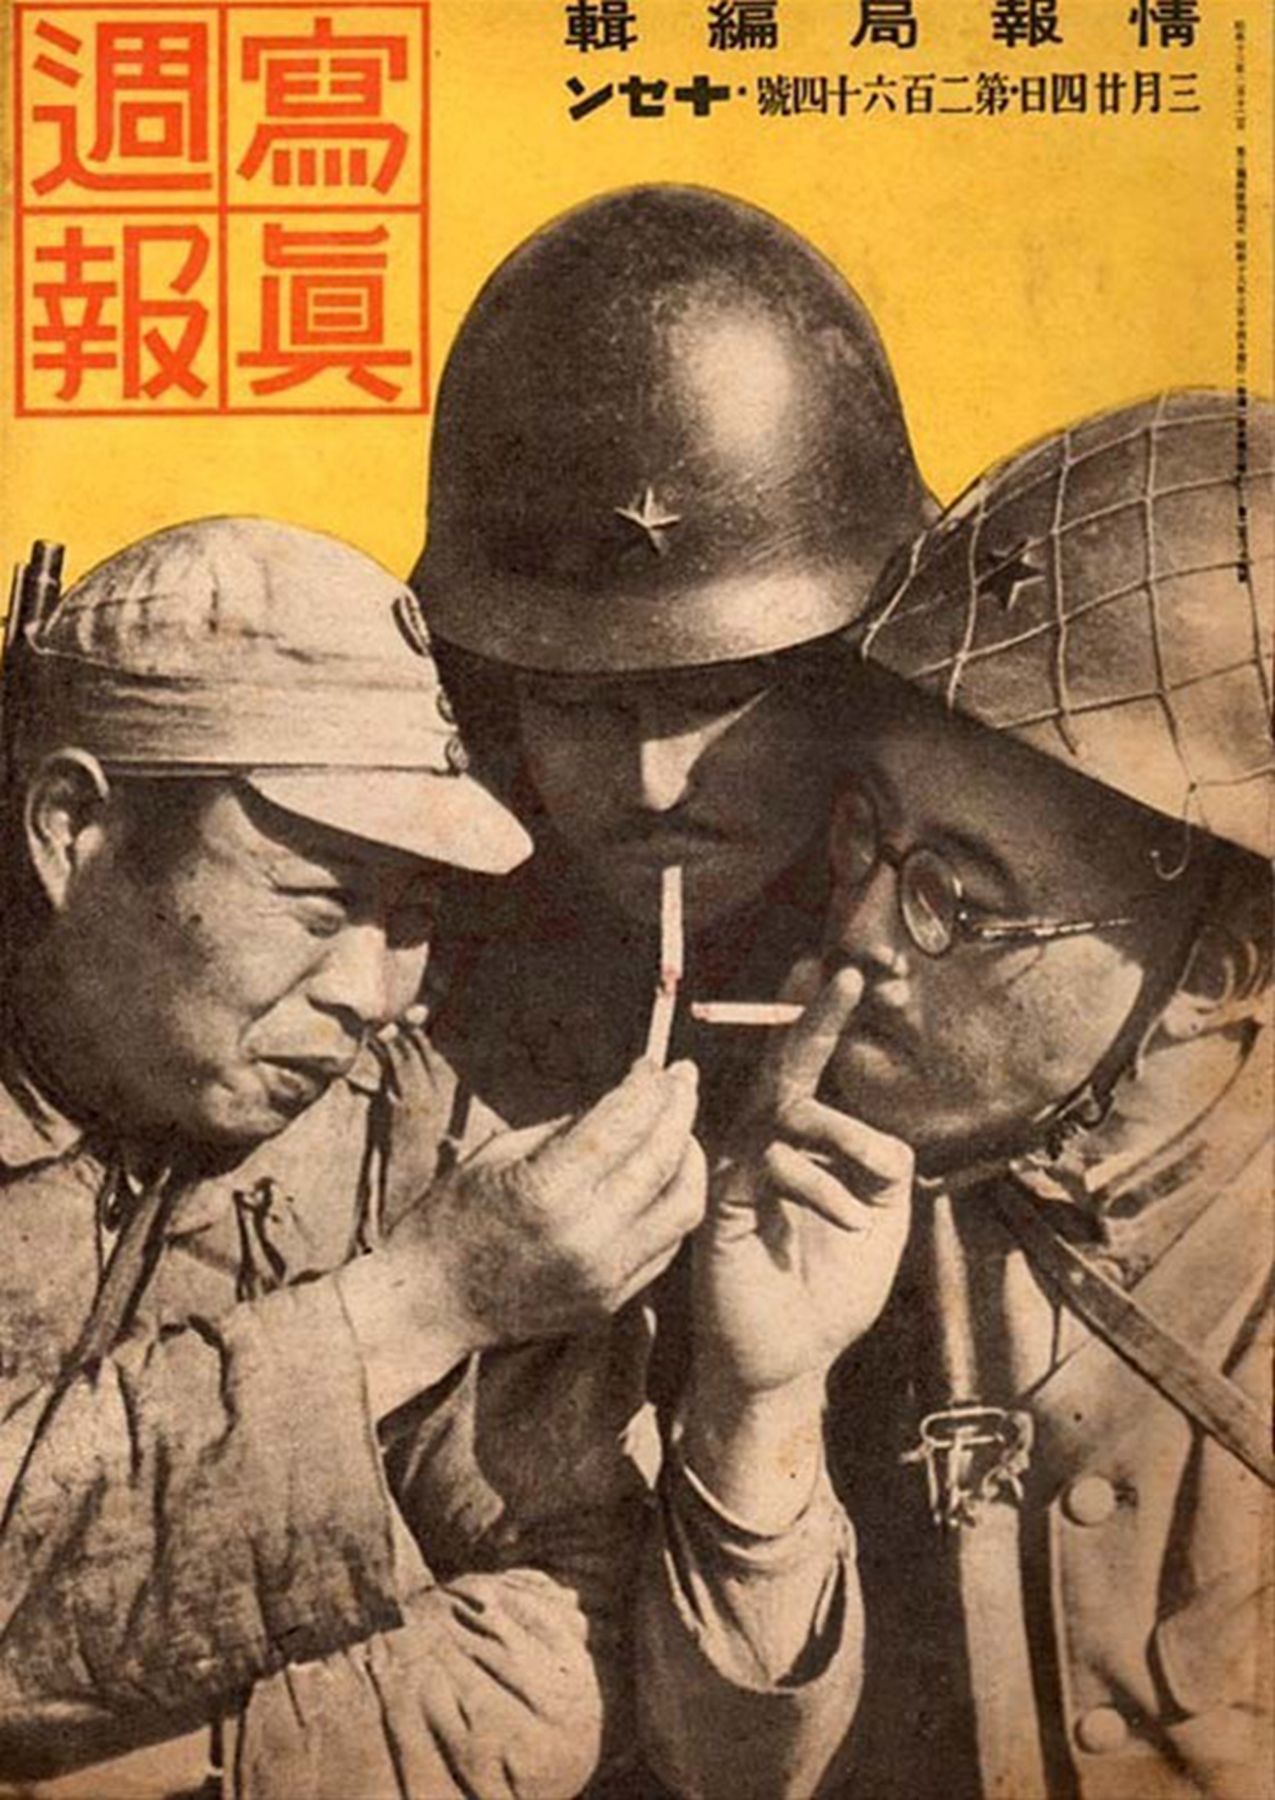 原创11月30日日本承认汪精卫伪政权1940年:抗战伪军总数超过百万人